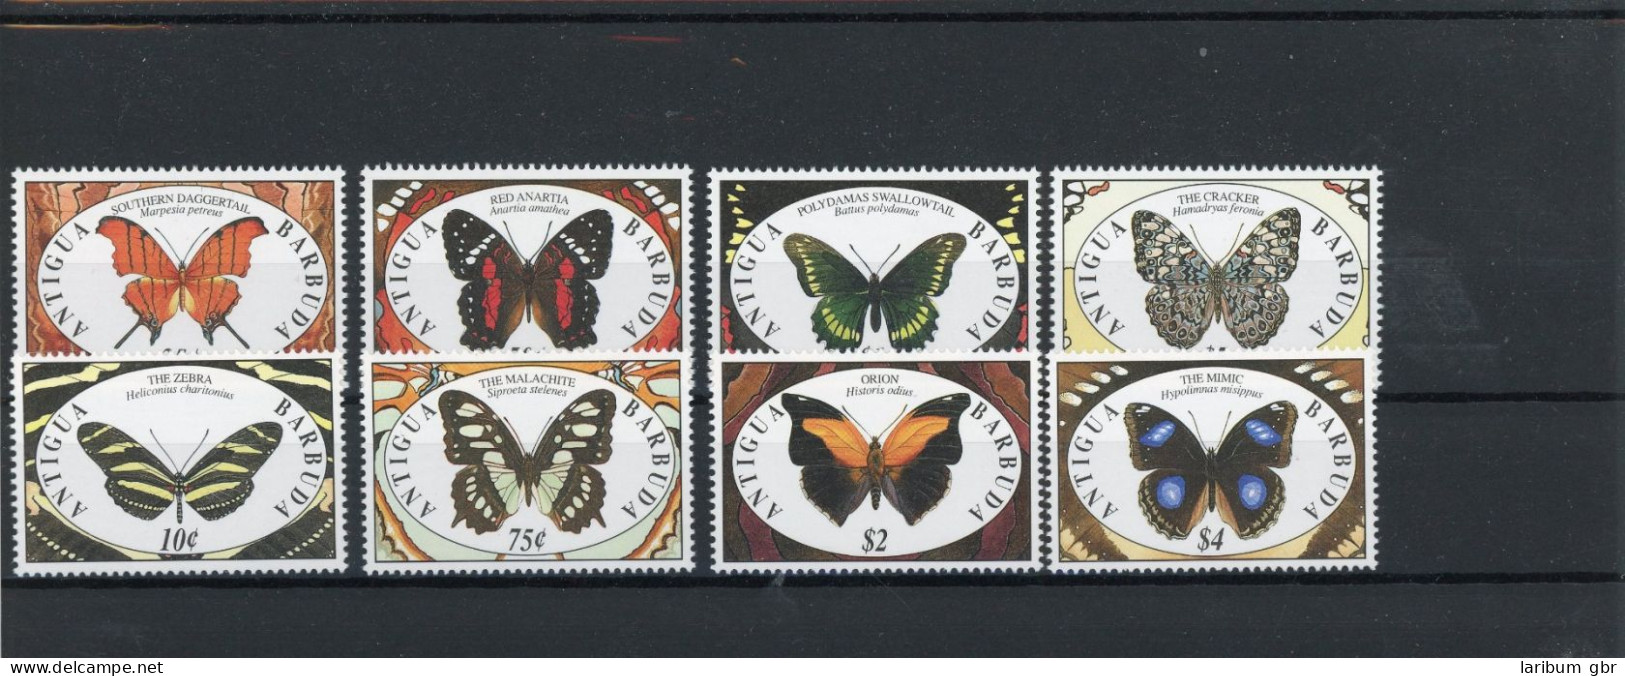 Antigua Und Barbuda 1475-1482 Postfrisch Schmetterlinge #JT992 - Antigua Und Barbuda (1981-...)